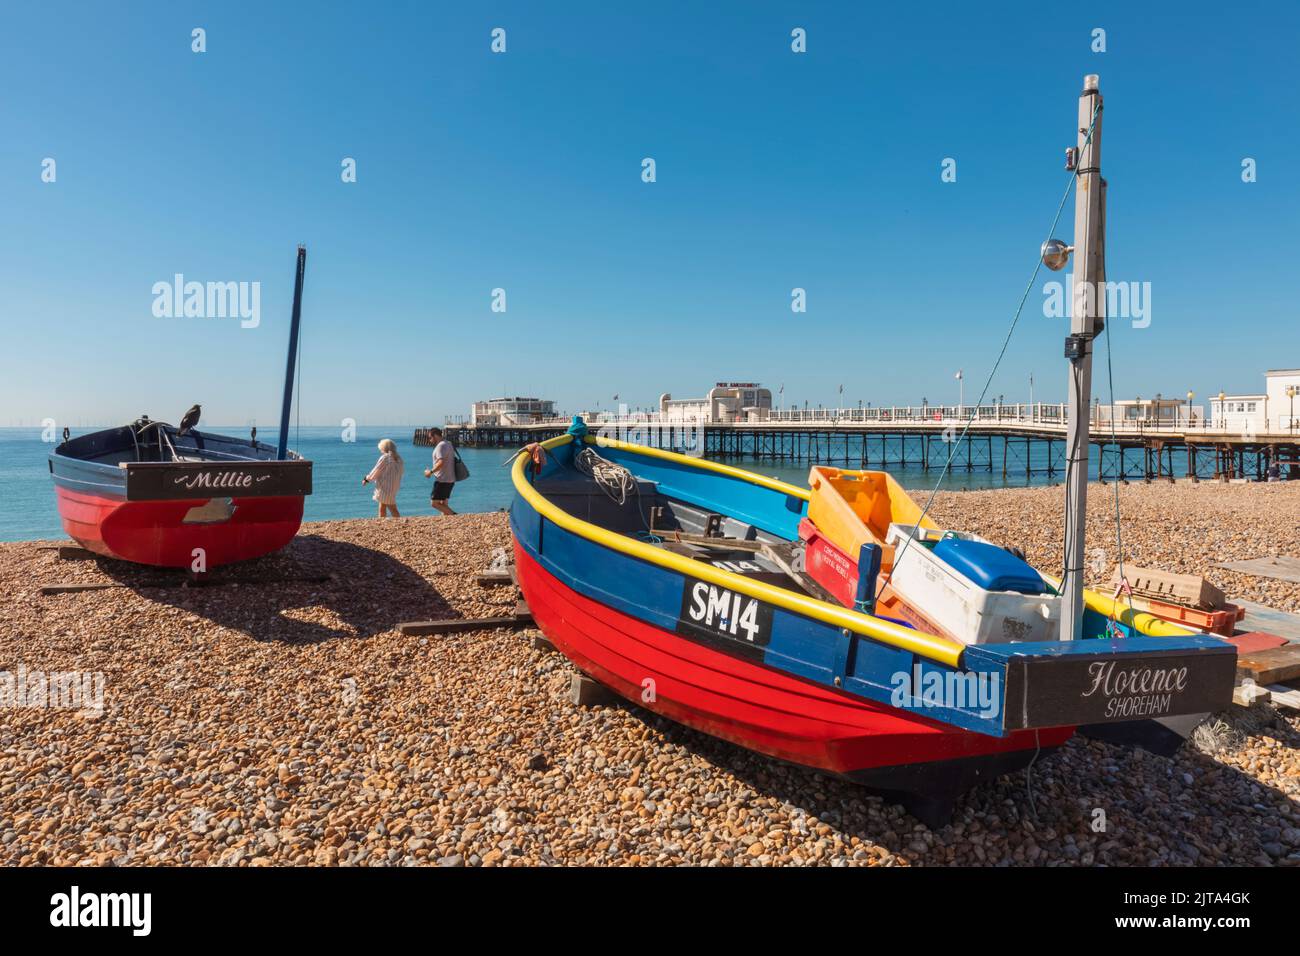 Angleterre, West Sussex, Worthing, Plage de Worthing, bateaux de pêche colorés et jetée de Worthing Banque D'Images